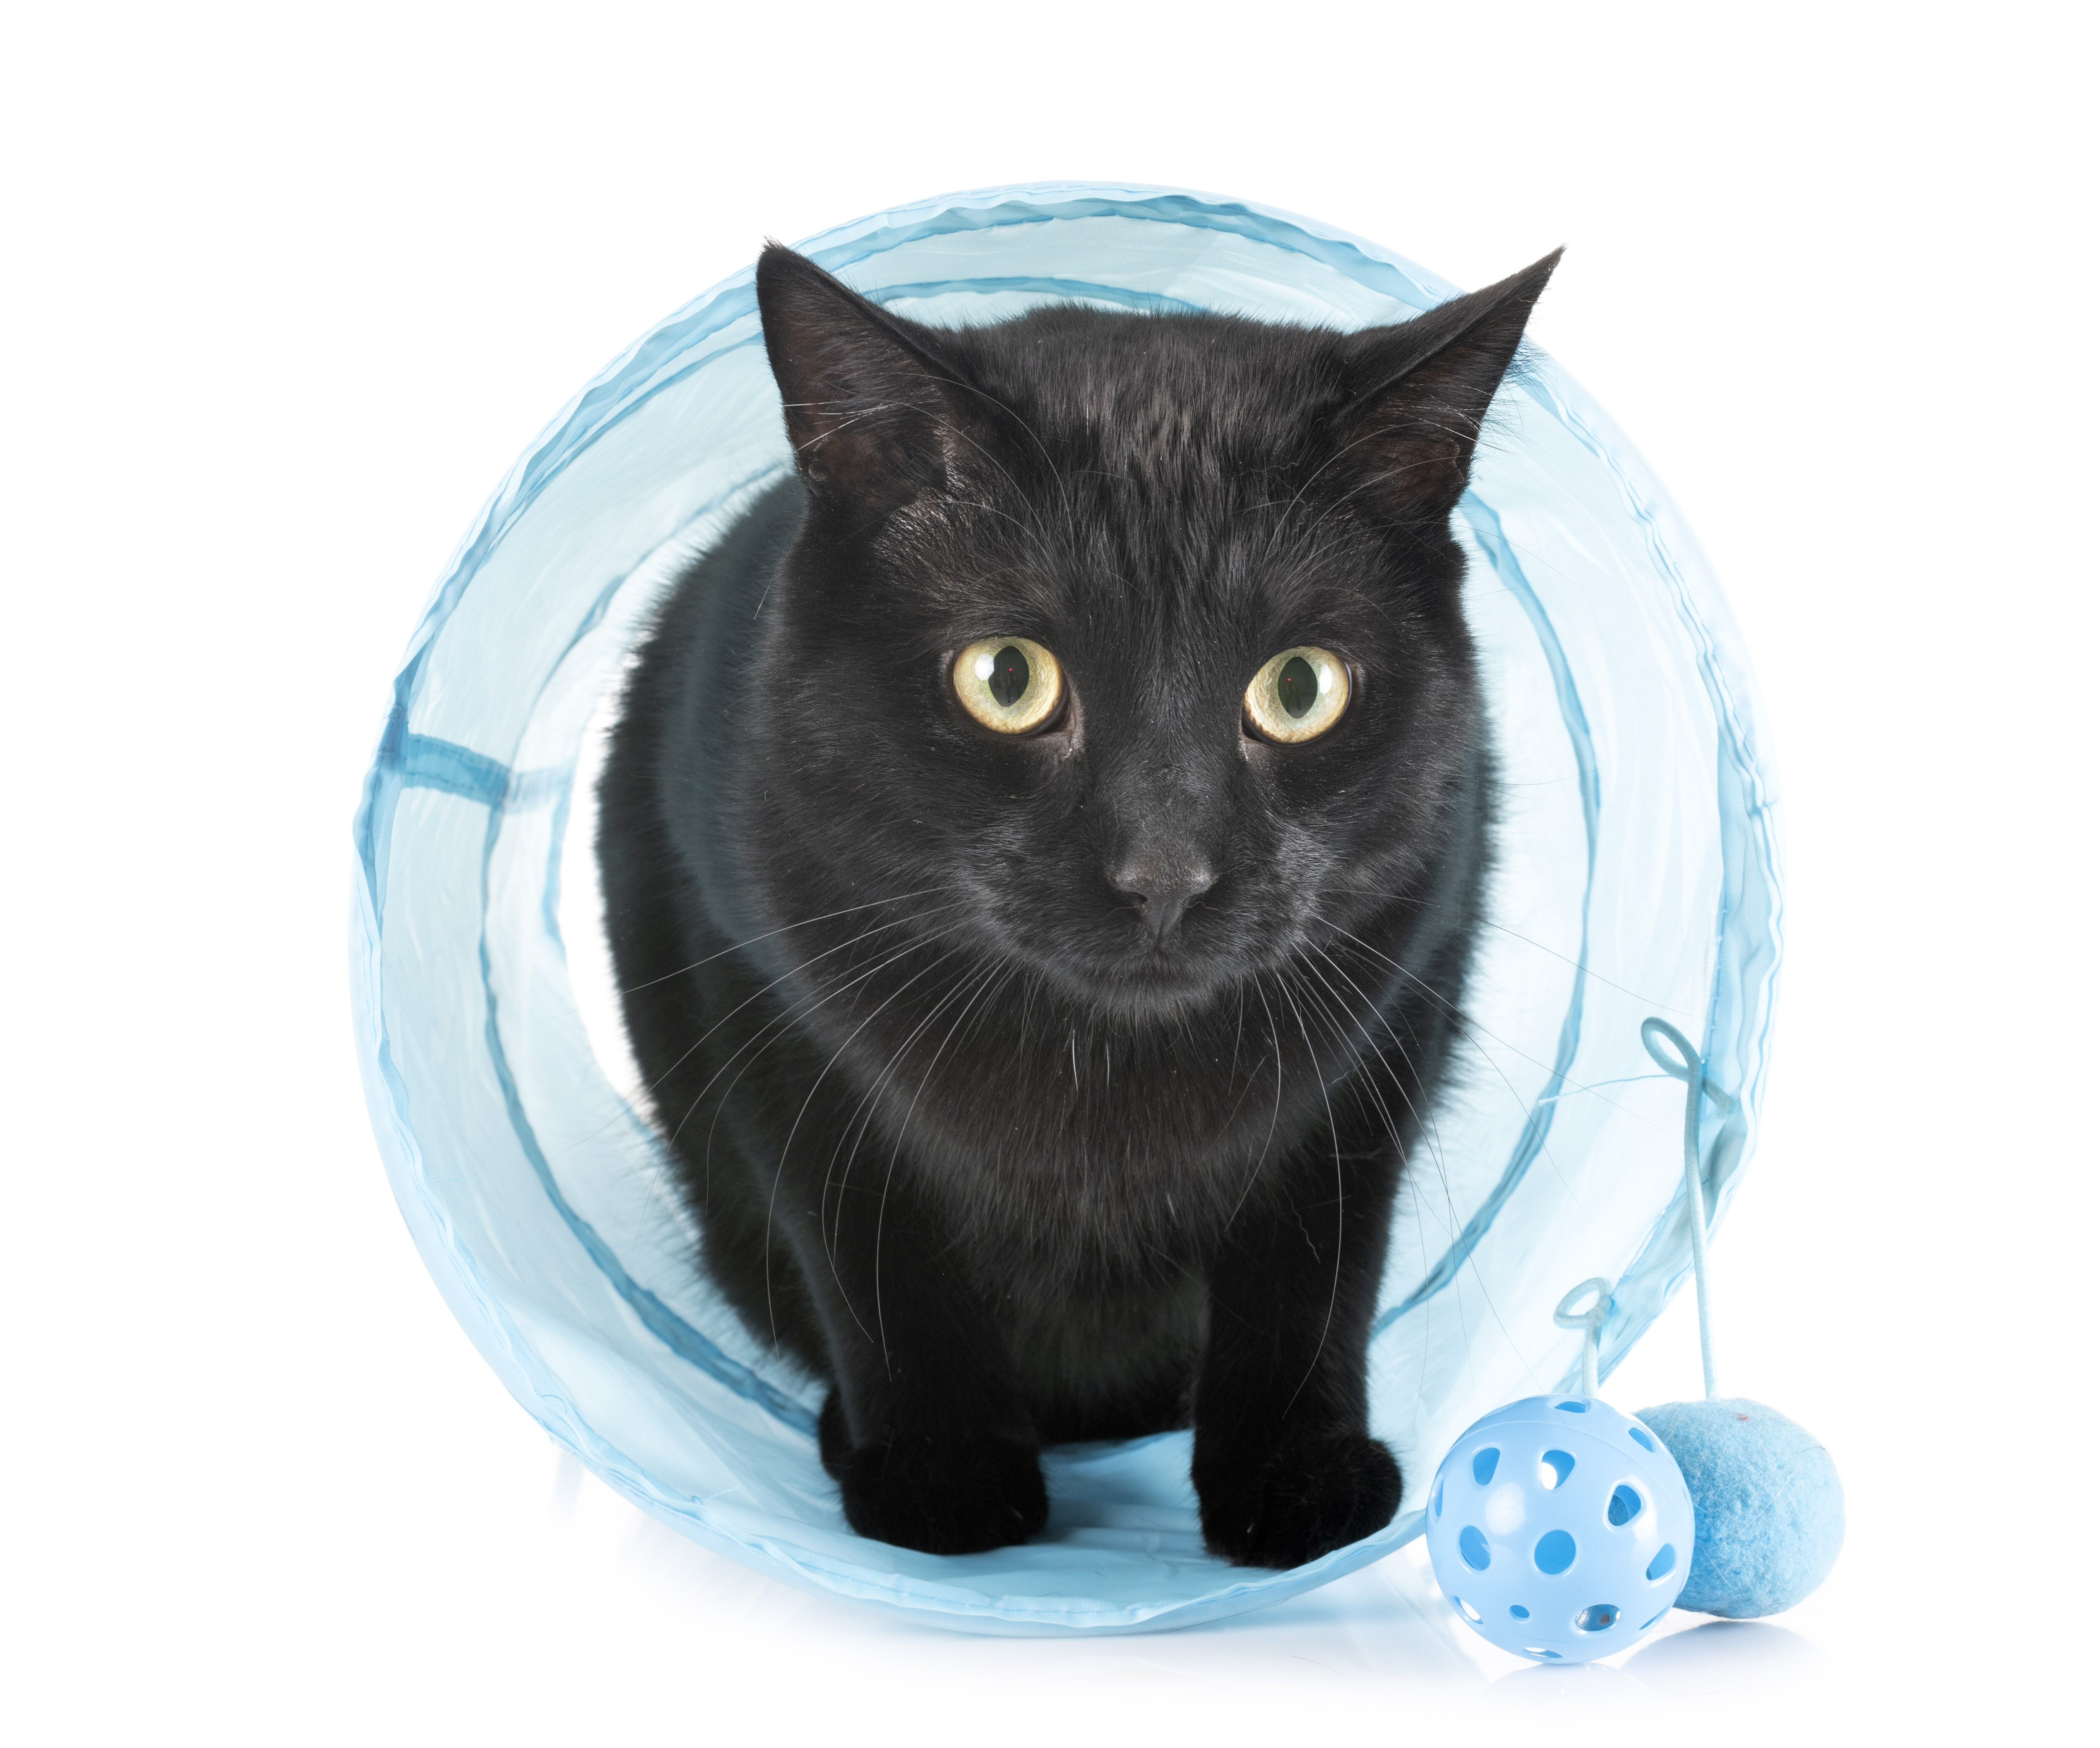 Große schwarze Katze kriecht durch einen kleinen blauen Spieltunnel